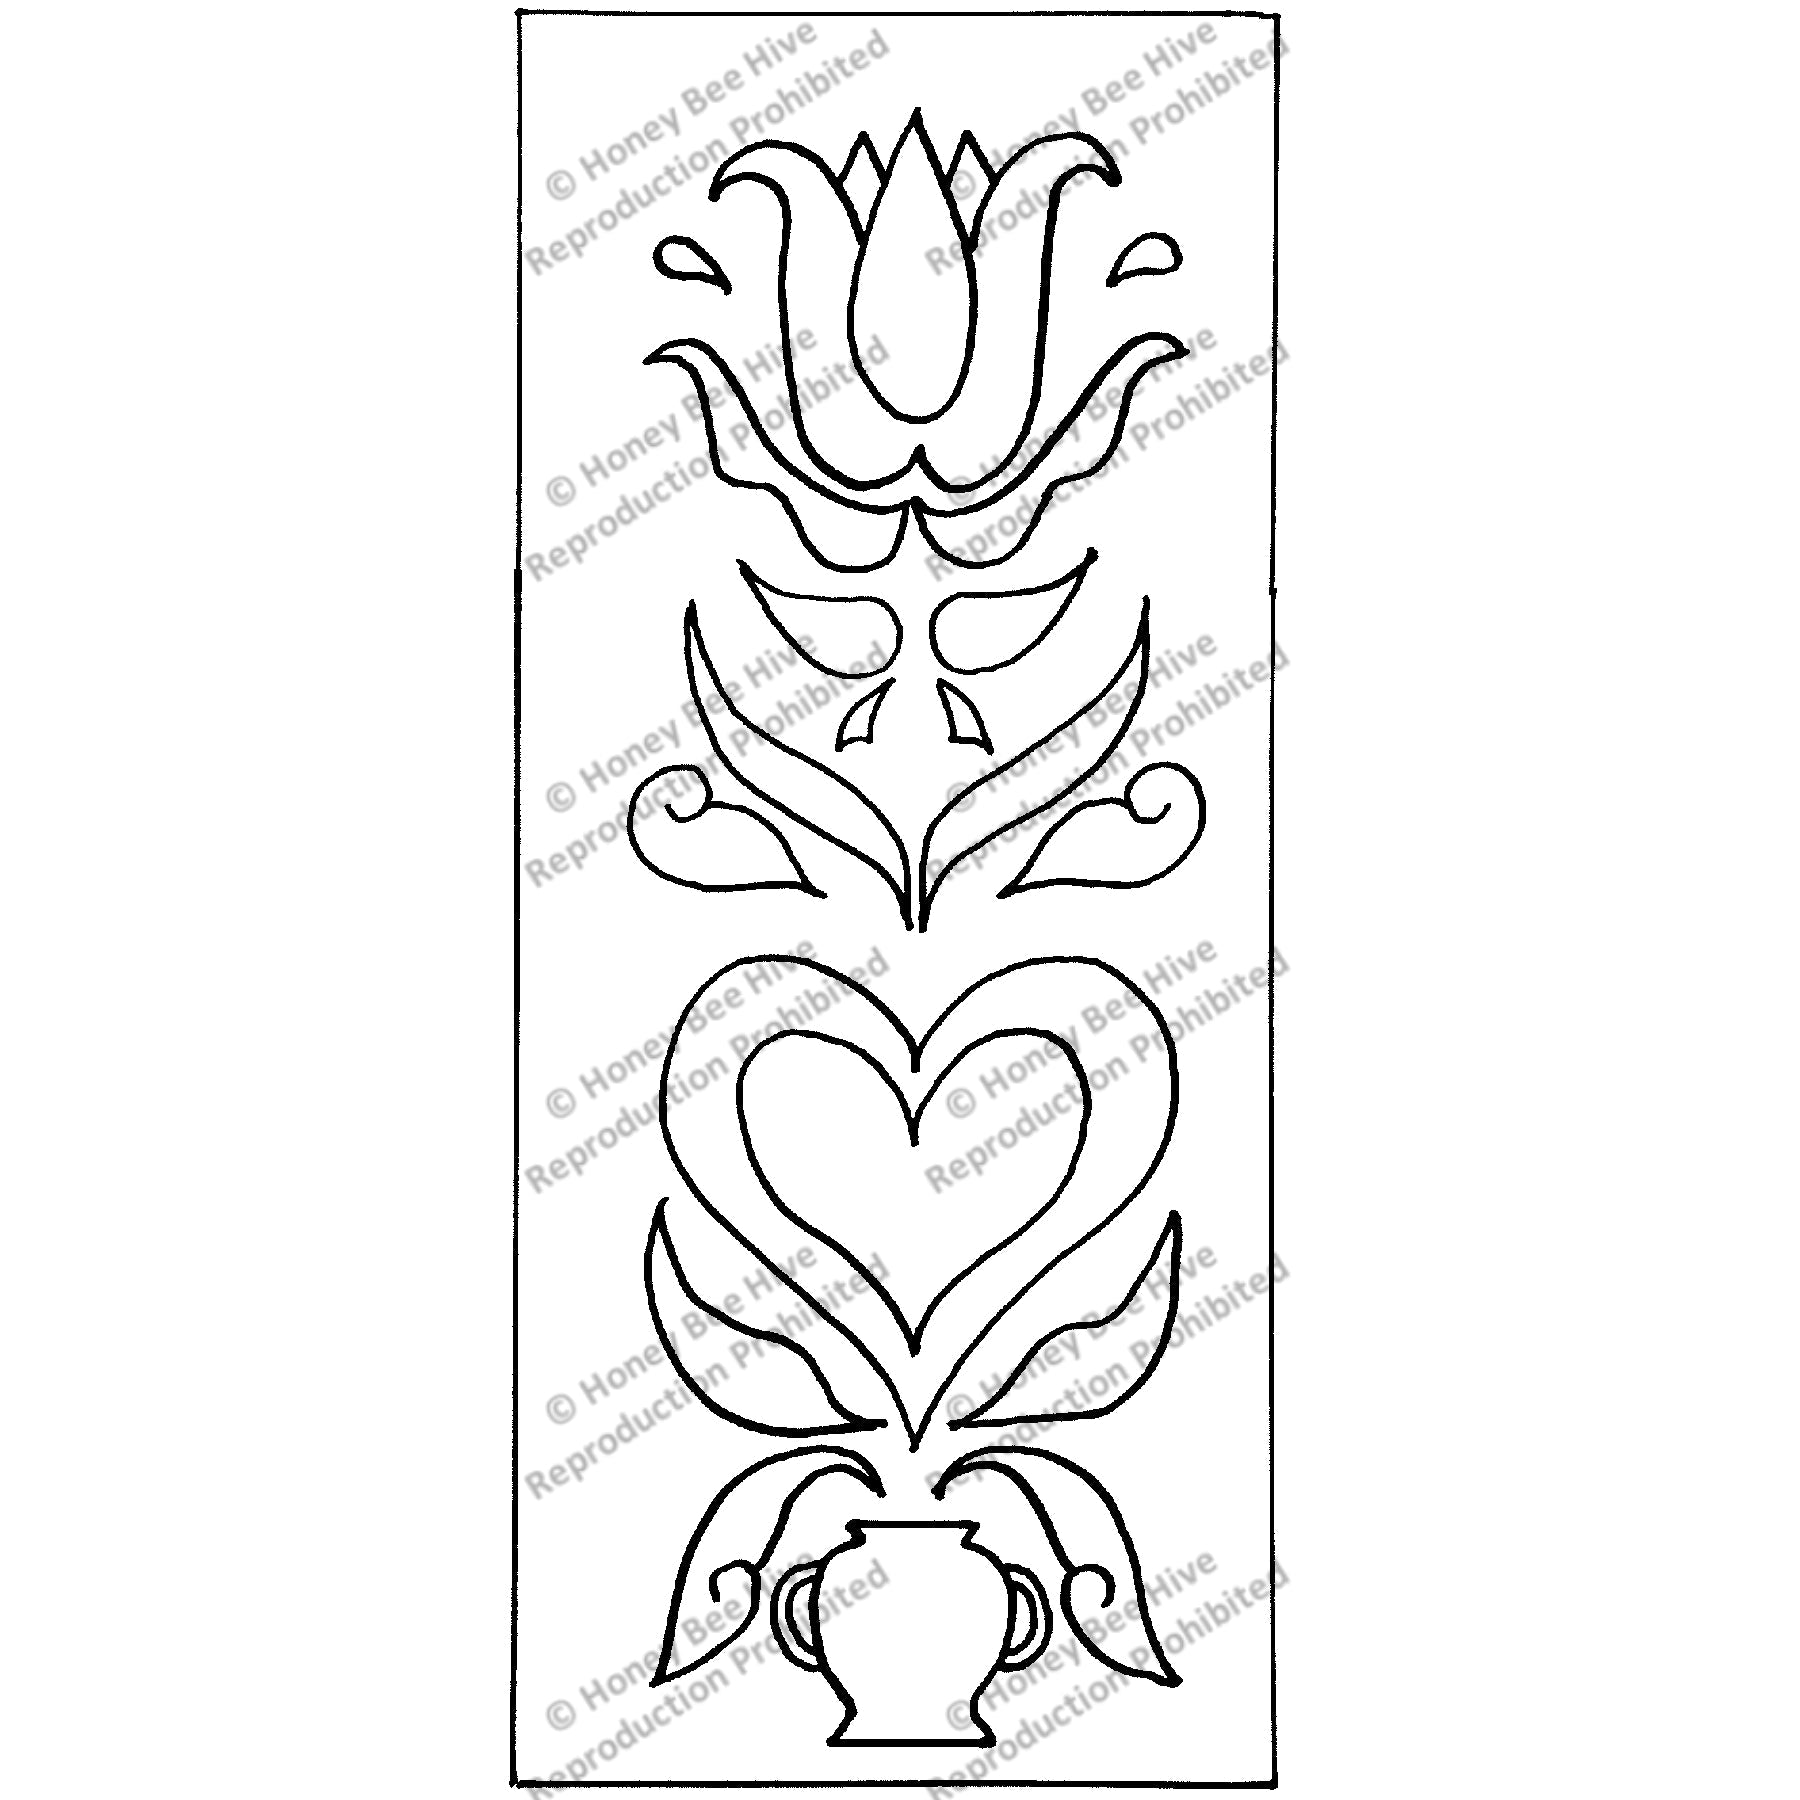 Fraktur – Heart and Flower, rug hooking pattern